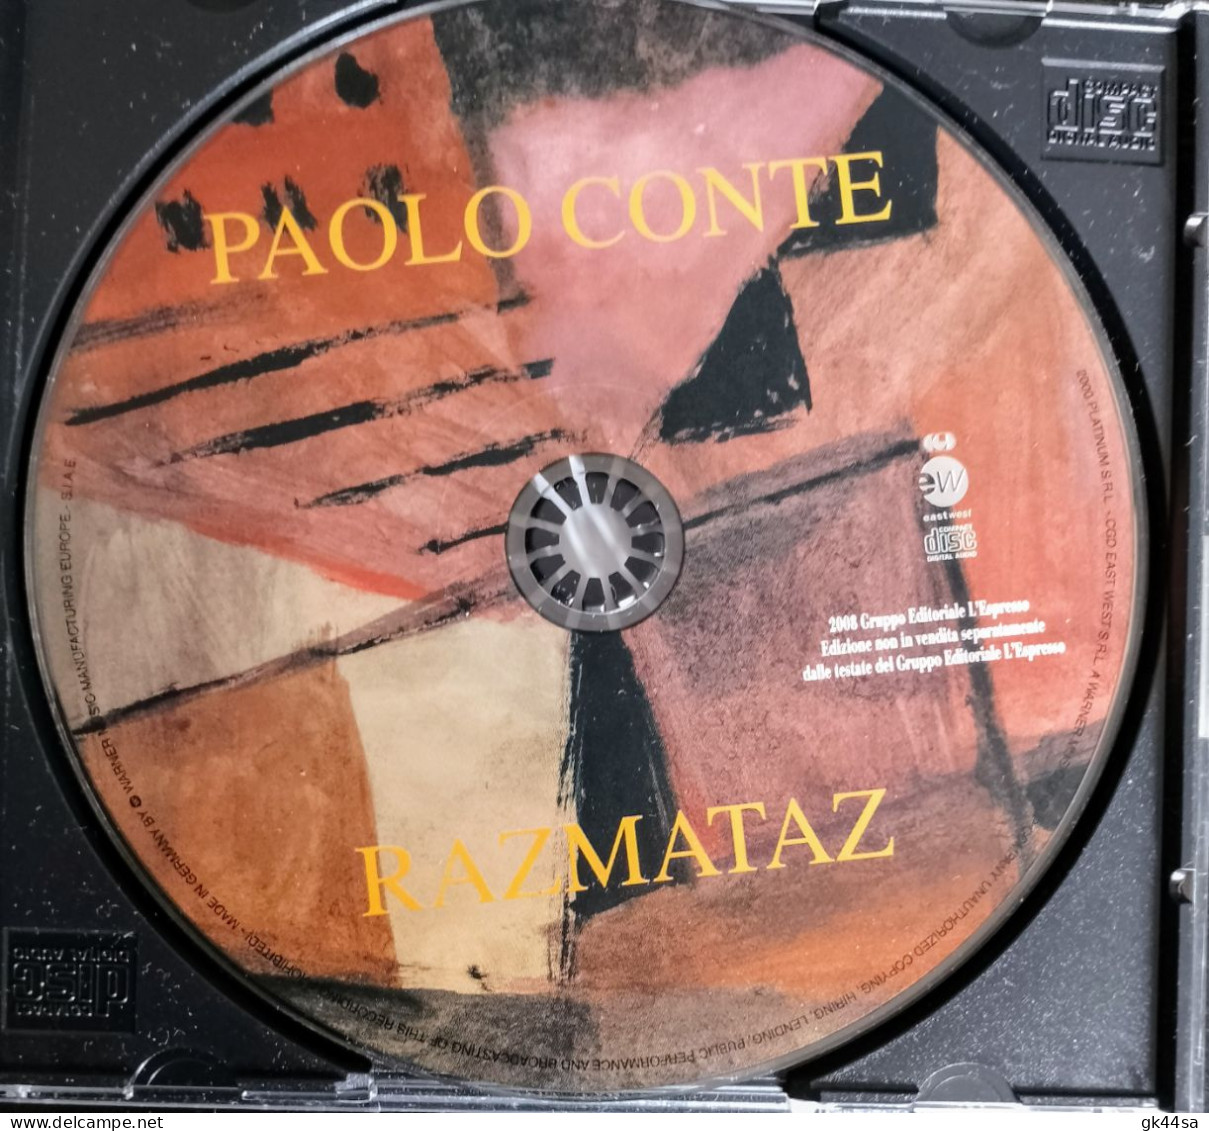 PAOLO CONTE "RAZMATAZ" - CGD East West - Ed. L'Espresso 2008 - Andere - Italiaans